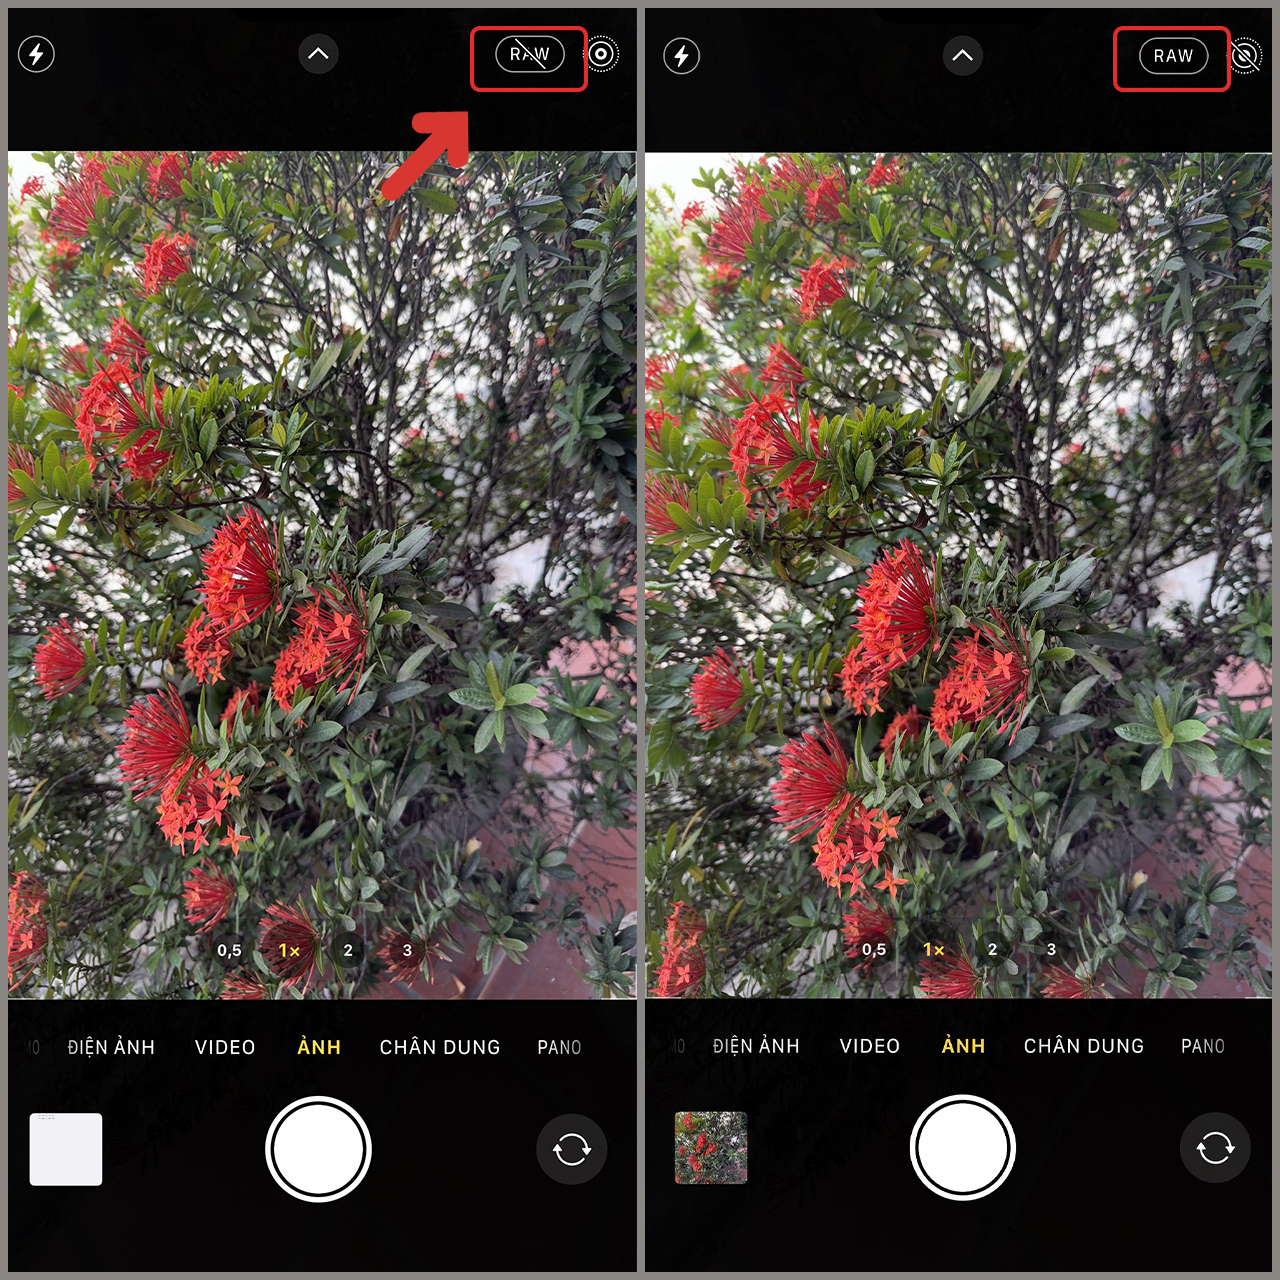 Bạn đang muốn sở hữu những tấm ảnh chất lượng cao với độ phân giải lên đến 48 MP từ chiếc iPhone 14 Pro mới ra mắt? Hãy xem ngay hướng dẫn chụp ảnh 48 MP trên iPhone 14 Pro của chúng tôi. Với những chỉ dẫn chi tiết, bạn sẽ dễ dàng tận dụng và tối ưu hóa khả năng chụp ảnh của chiếc điện thoại của mình.